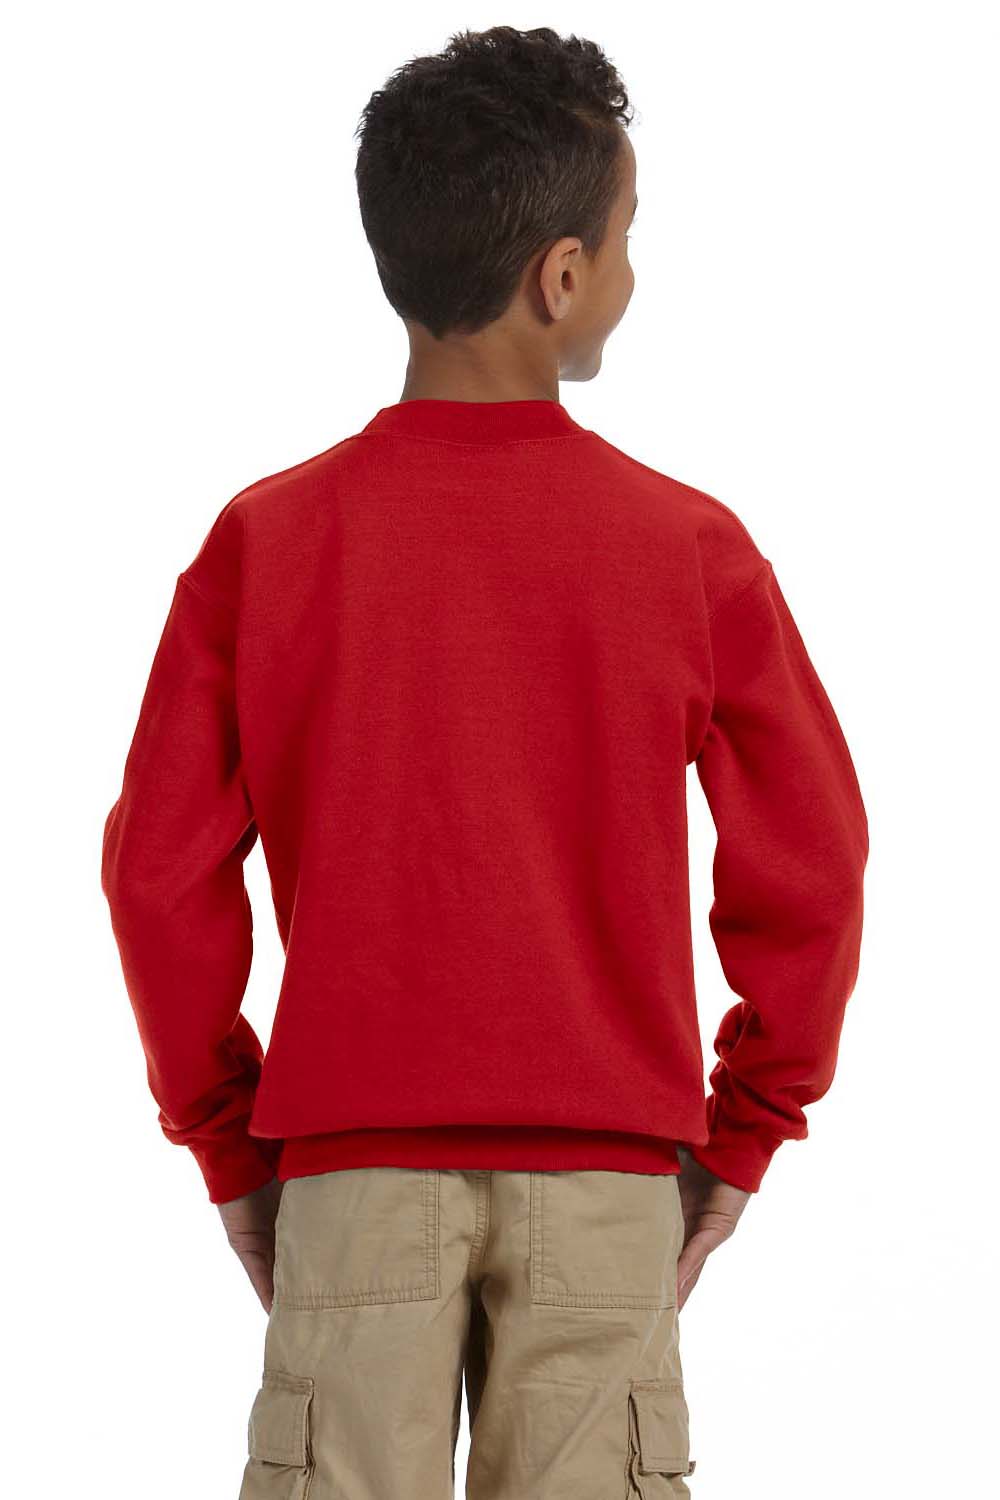 Gildan G180B Youth Fleece Crewneck Sweatshirt Red Back